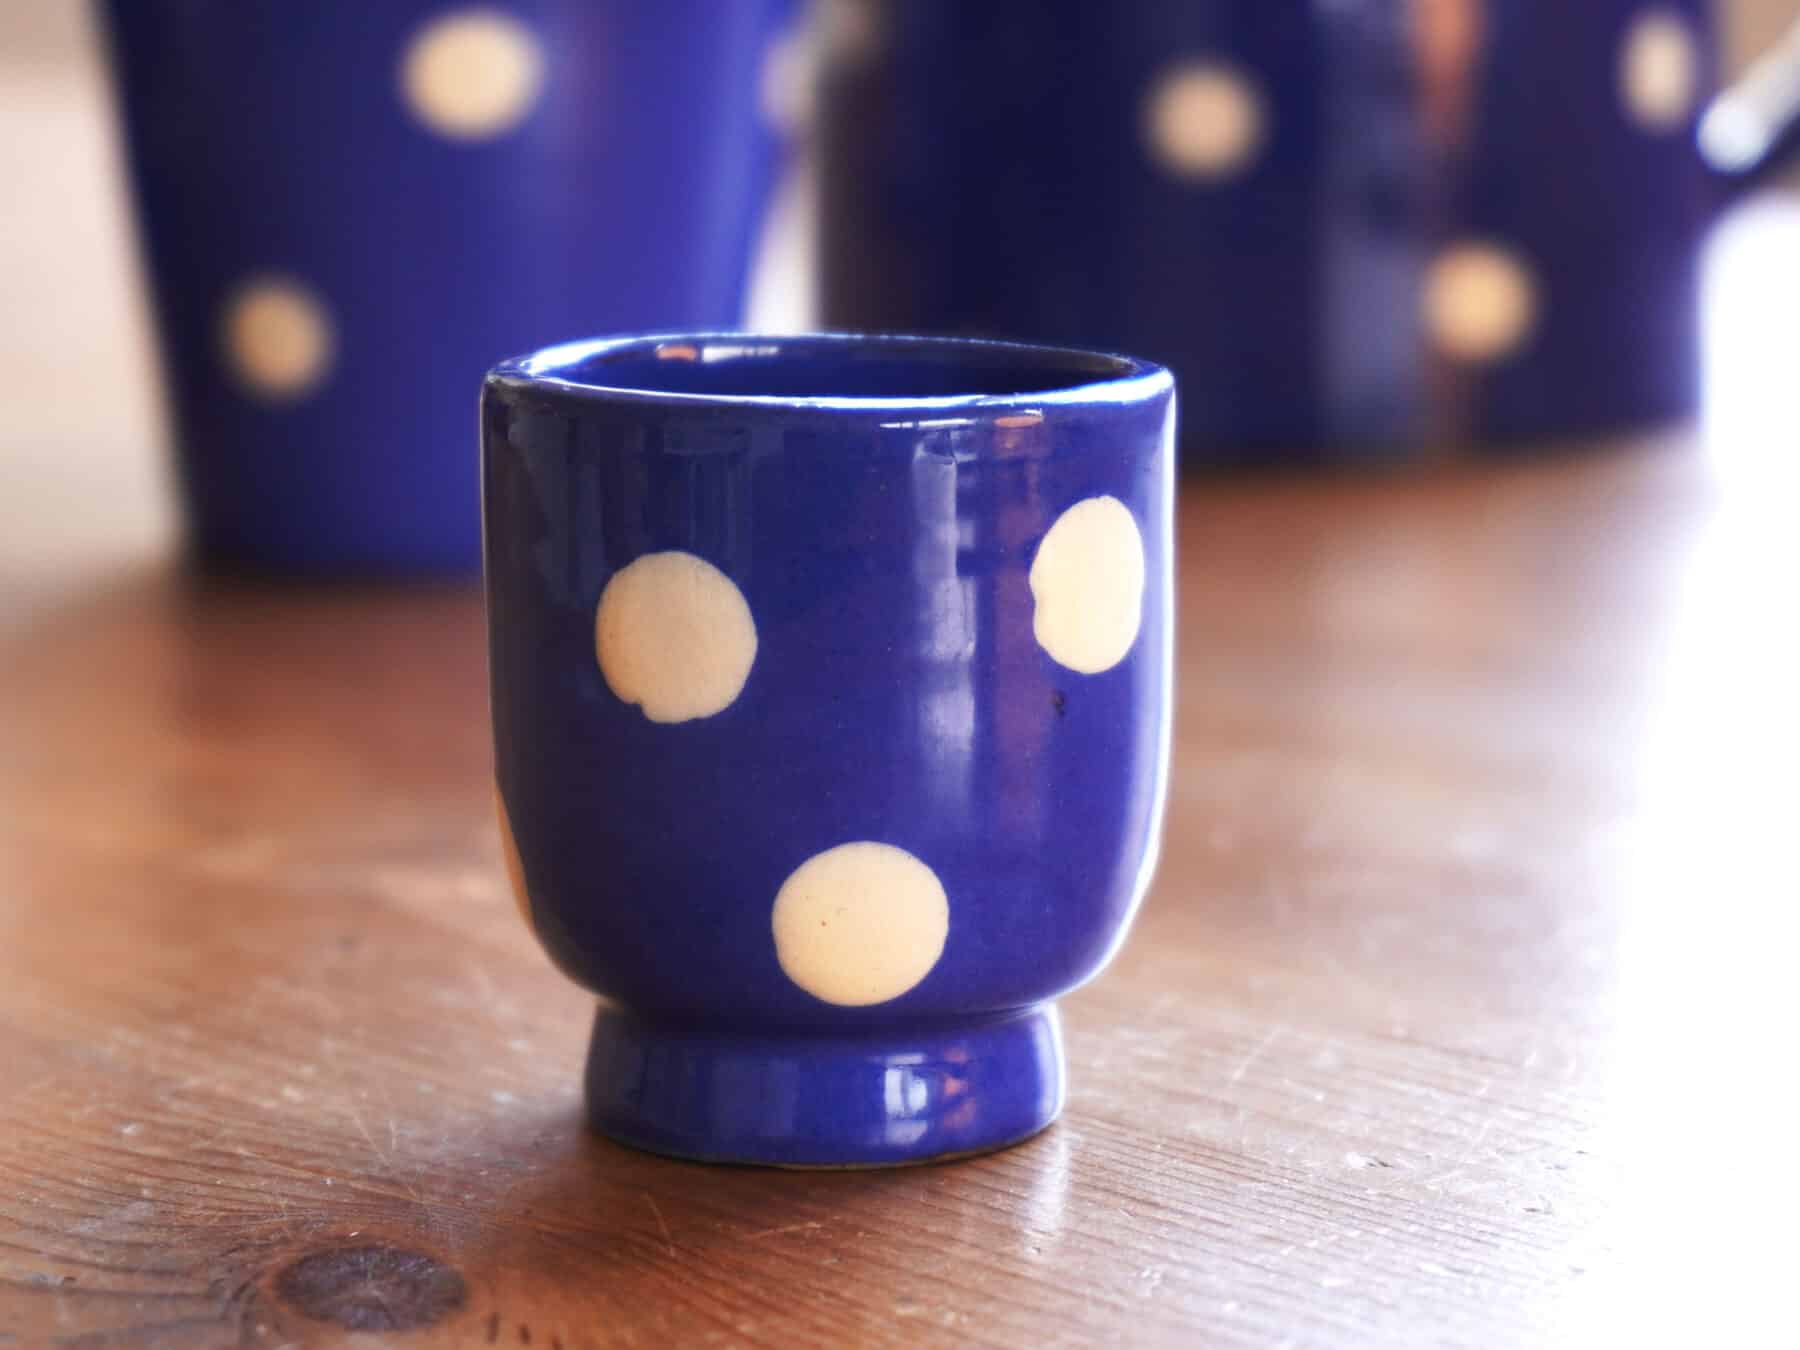 Eierbecher Keramik Tupfen blau weiss swiss made mood